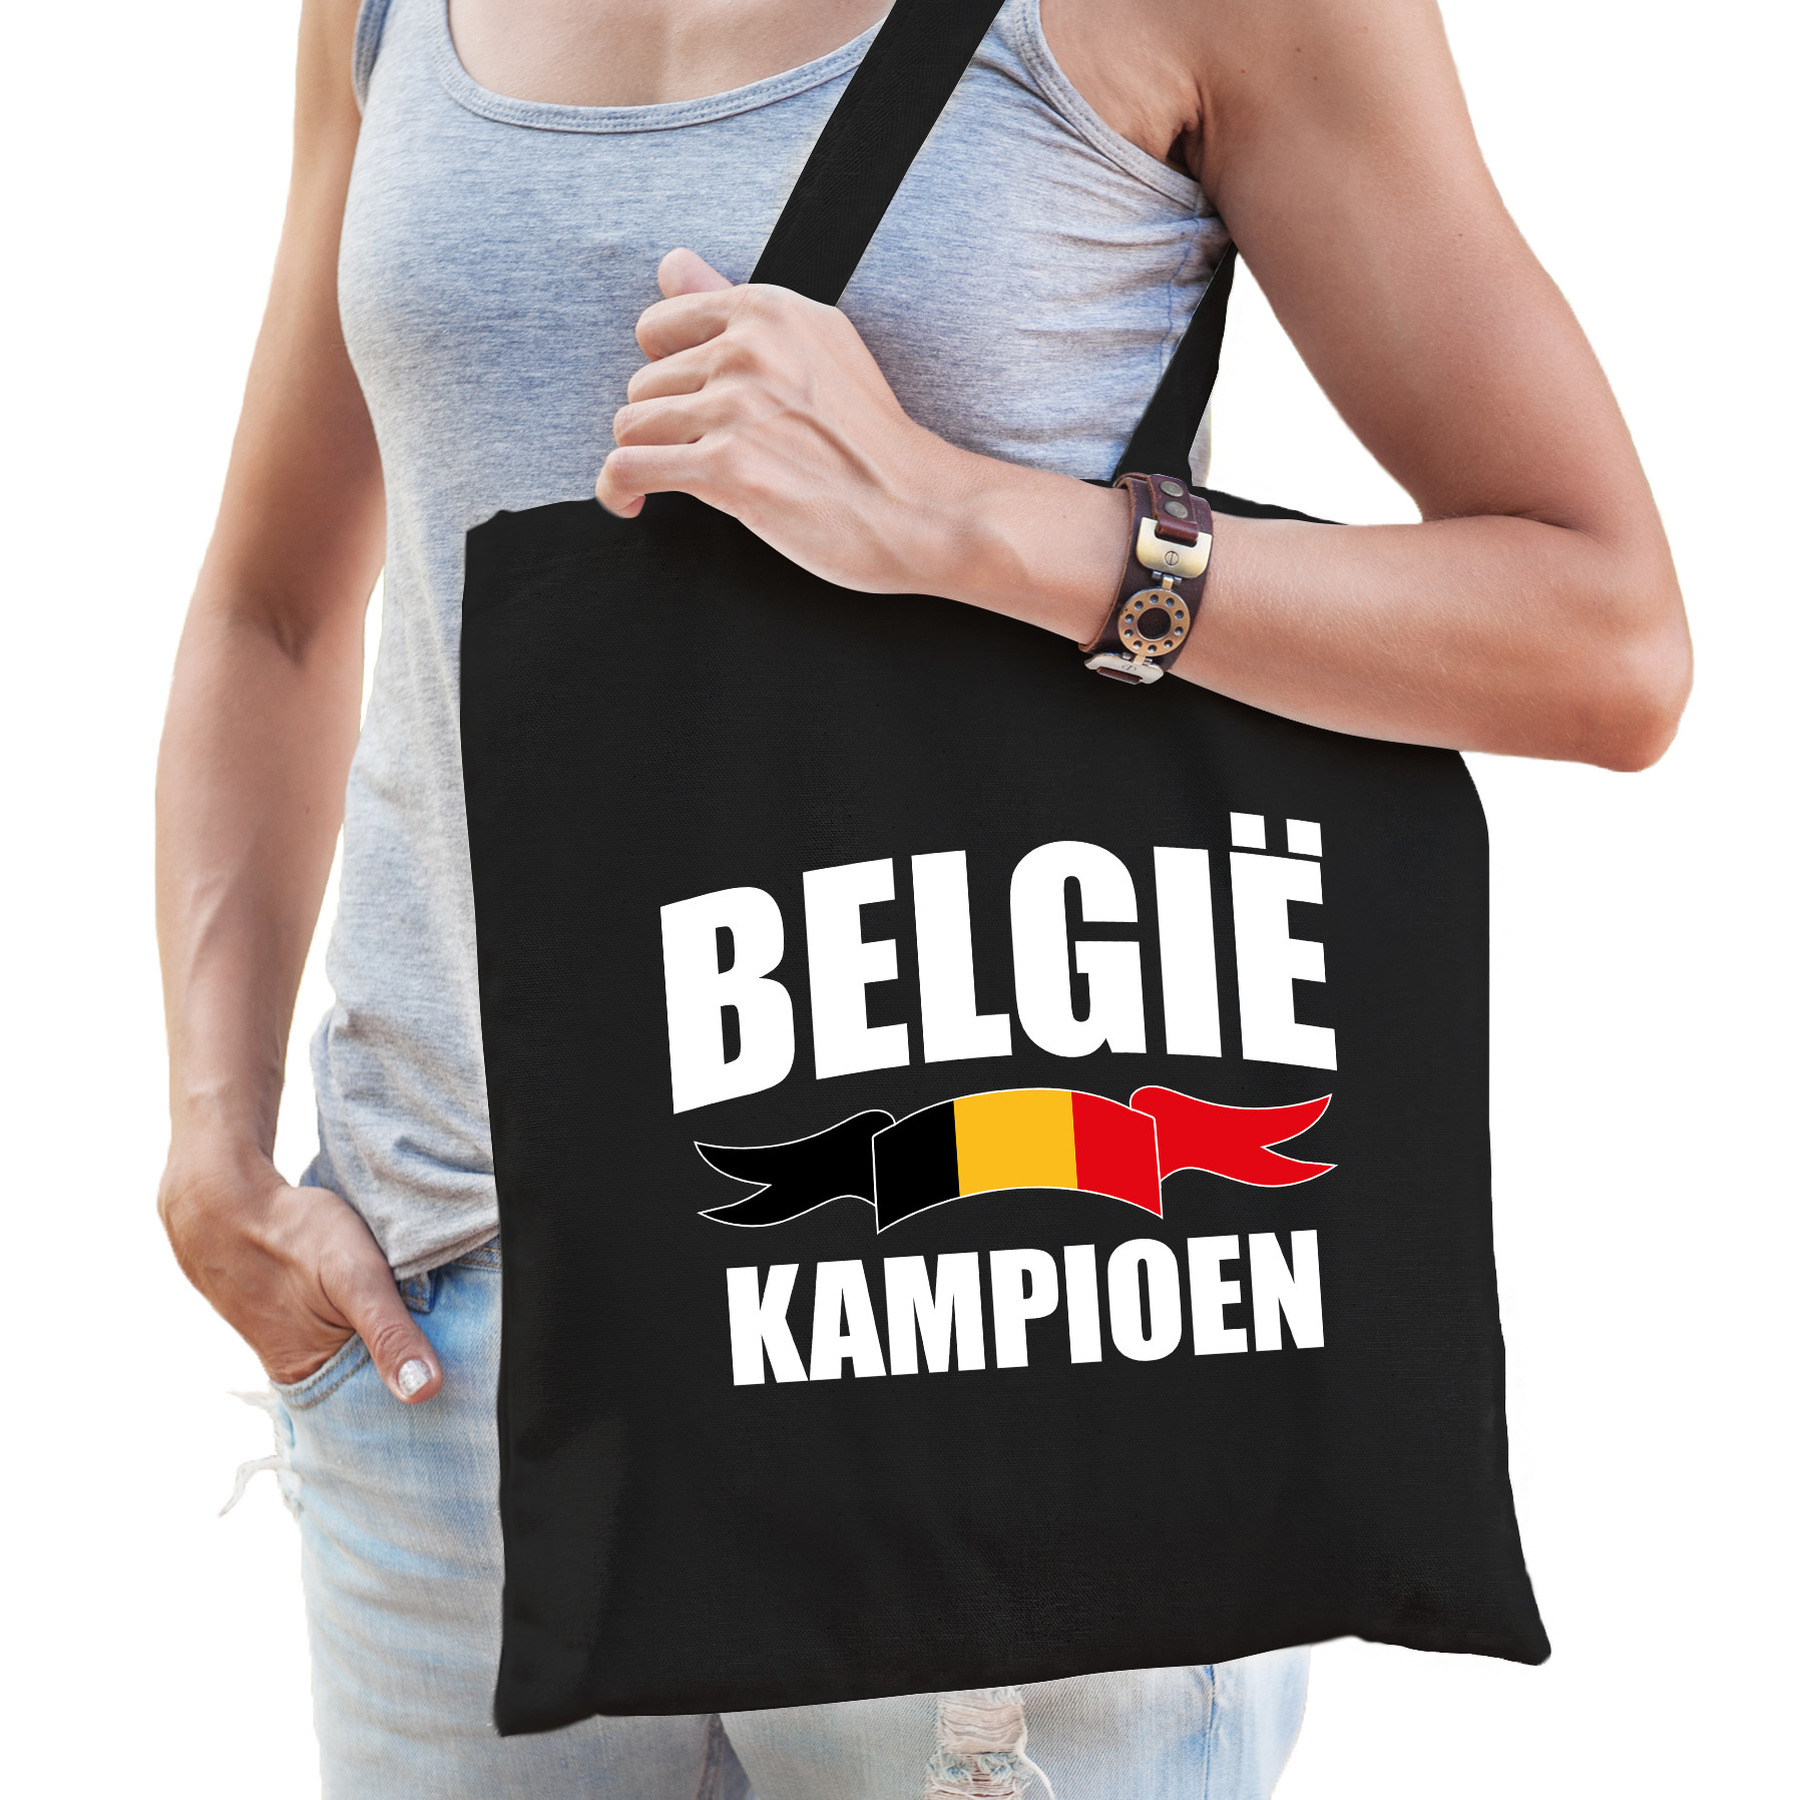 Belgie kampioen supporter tas zwart voor dames en heren EK- WK voetbal